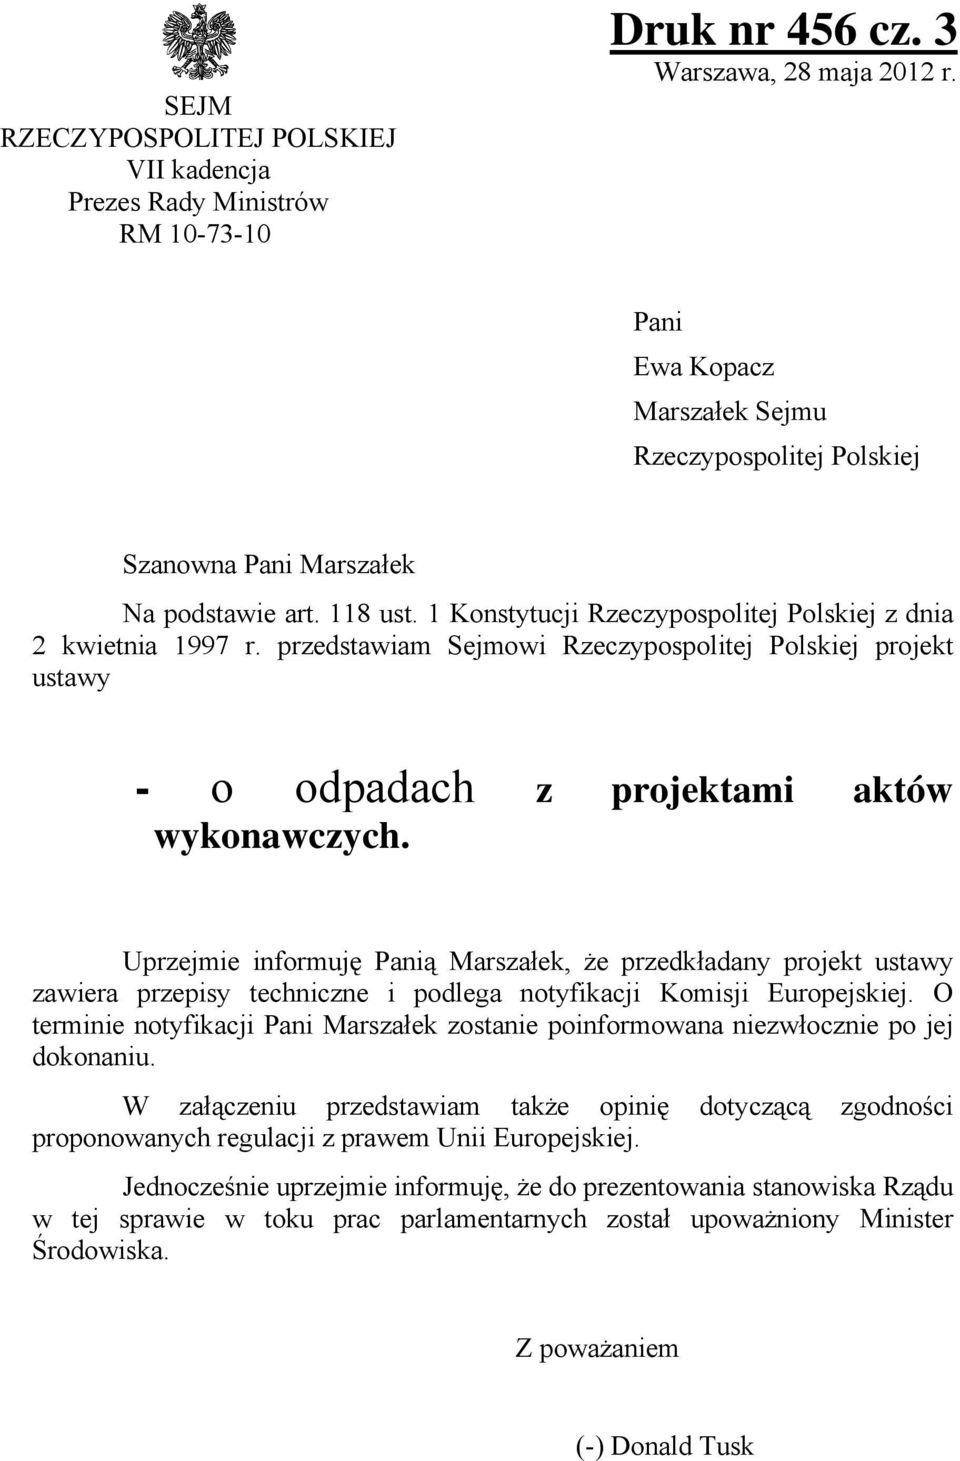 1 Konstytucji Rzeczypospolitej Polskiej z dnia 2 kwietnia 1997 r. przedstawiam Sejmowi Rzeczypospolitej Polskiej projekt ustawy - o odpadach z projektami aktów wykonawczych.